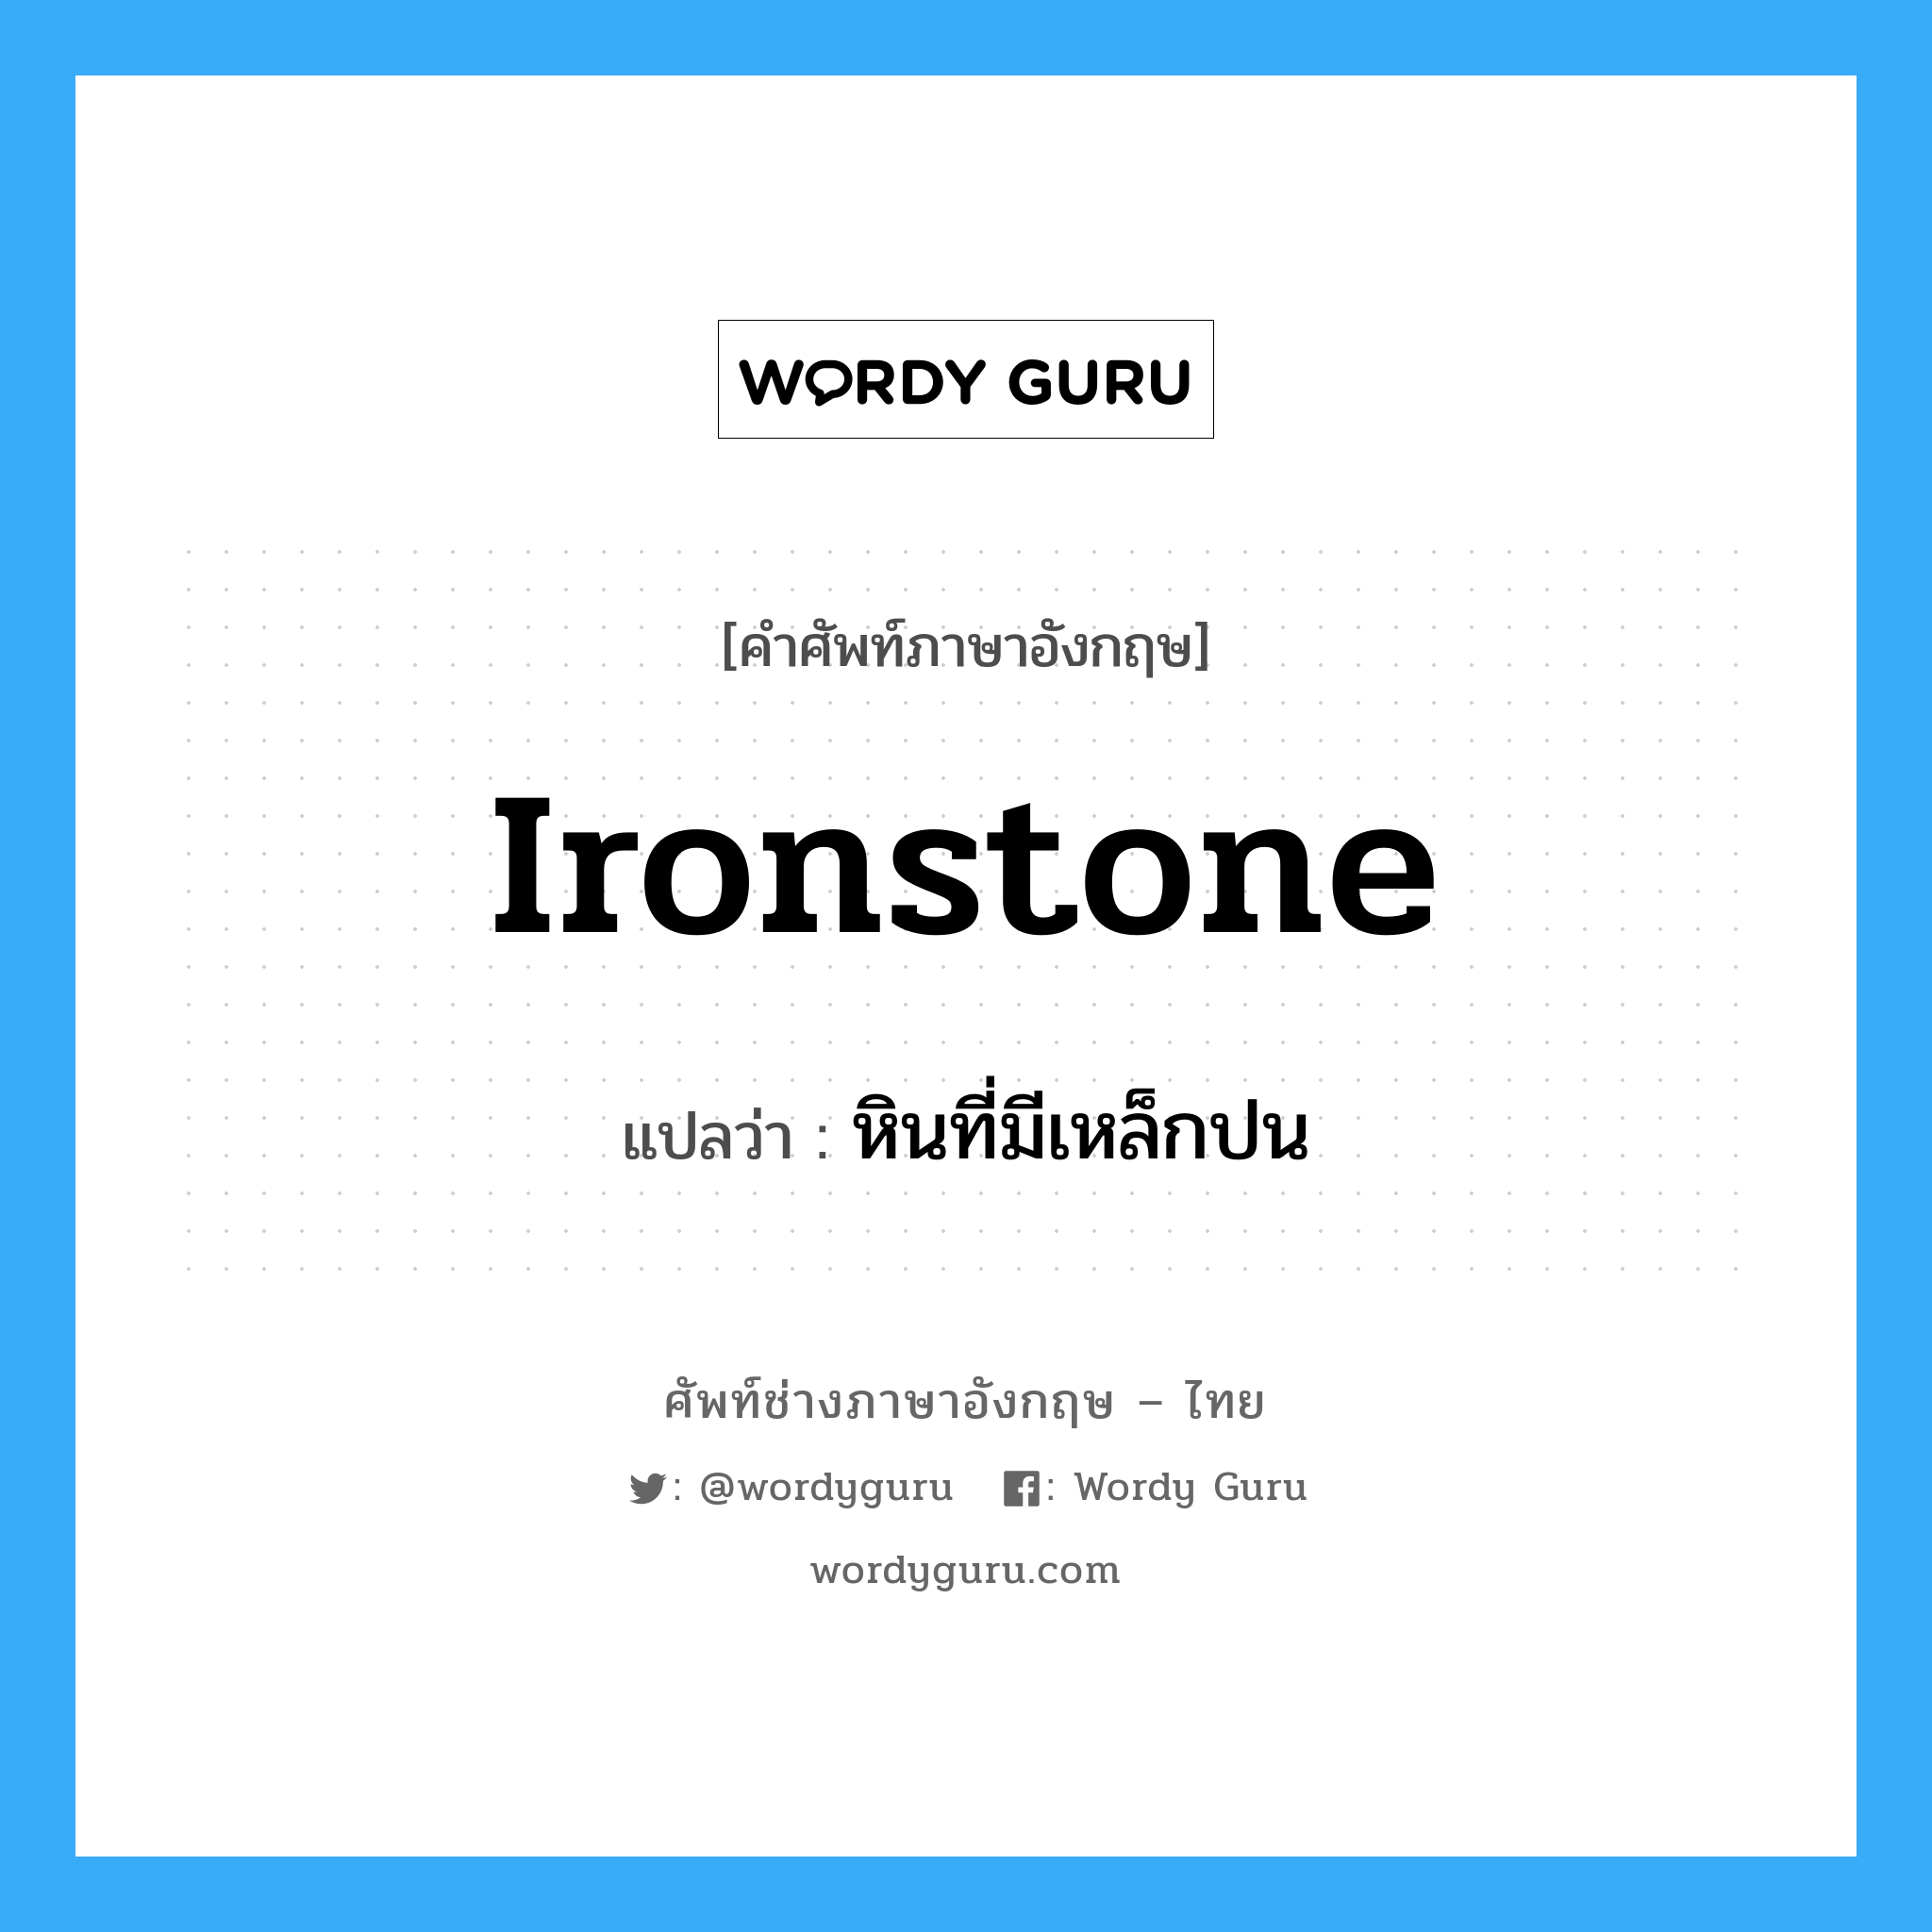 ironstone แปลว่า?, คำศัพท์ช่างภาษาอังกฤษ - ไทย ironstone คำศัพท์ภาษาอังกฤษ ironstone แปลว่า หินที่มีเหล็กปน